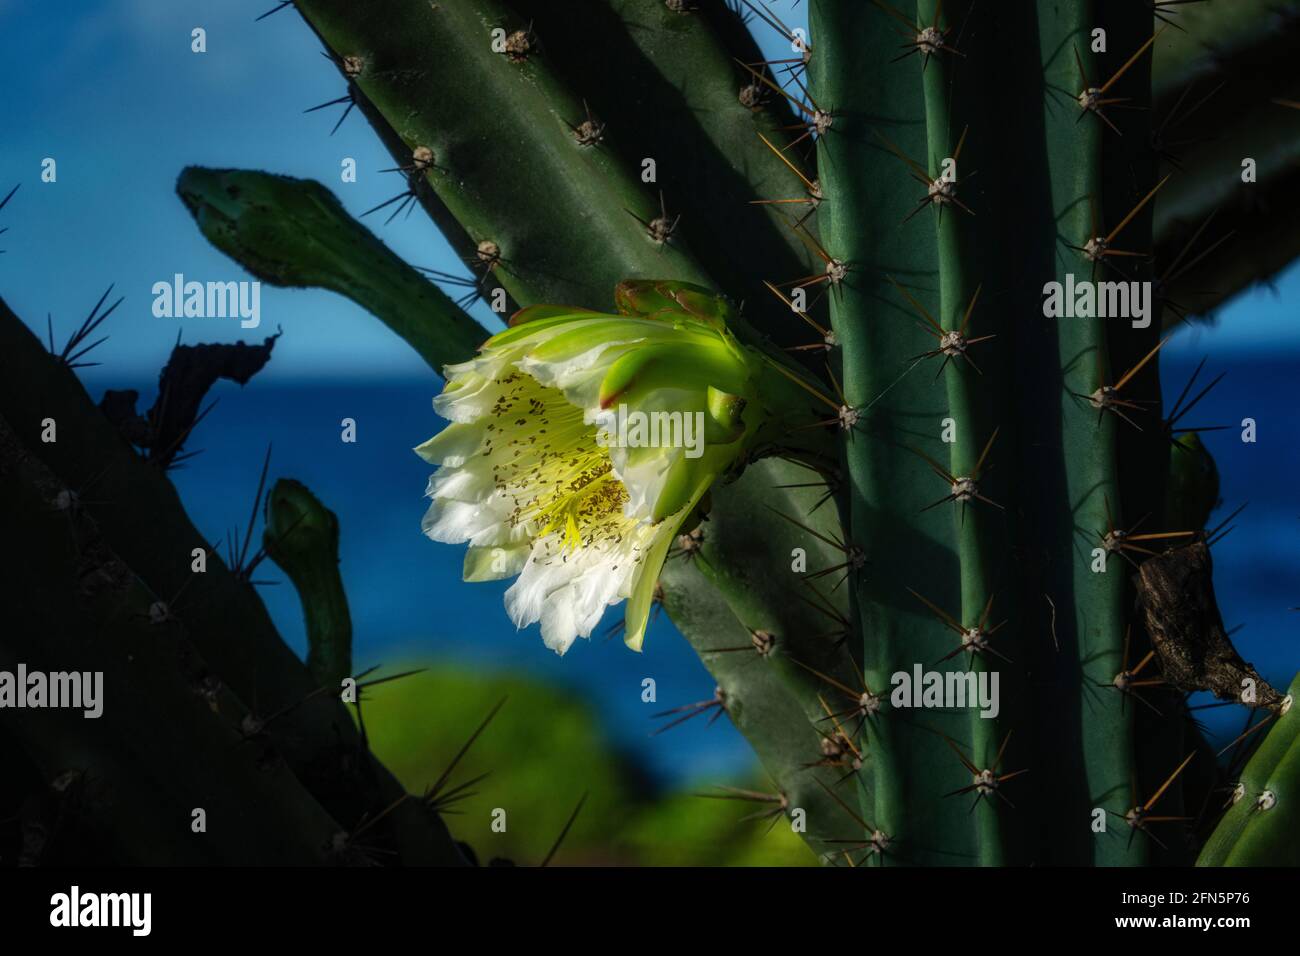 Fleur de cactus blanche. Kauai, Hawaiibloom, fleurs sauvages Banque D'Images